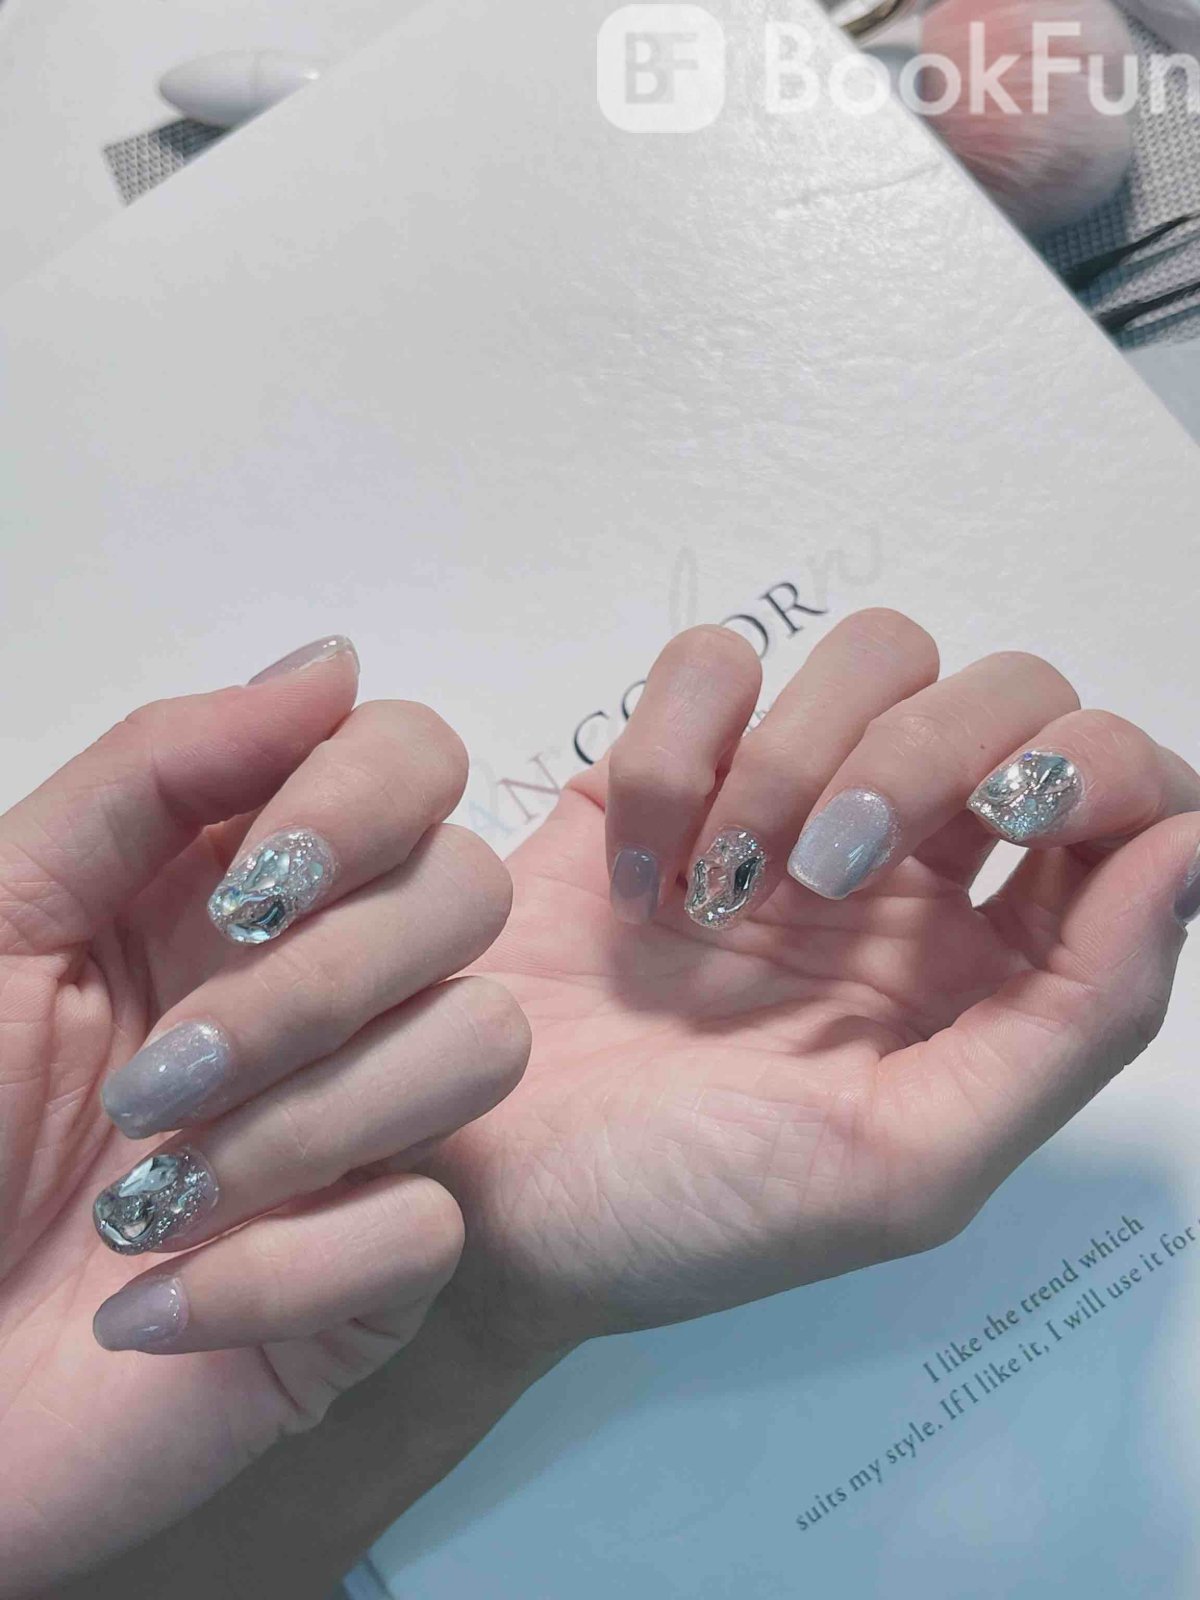 Hanna’nail beauty